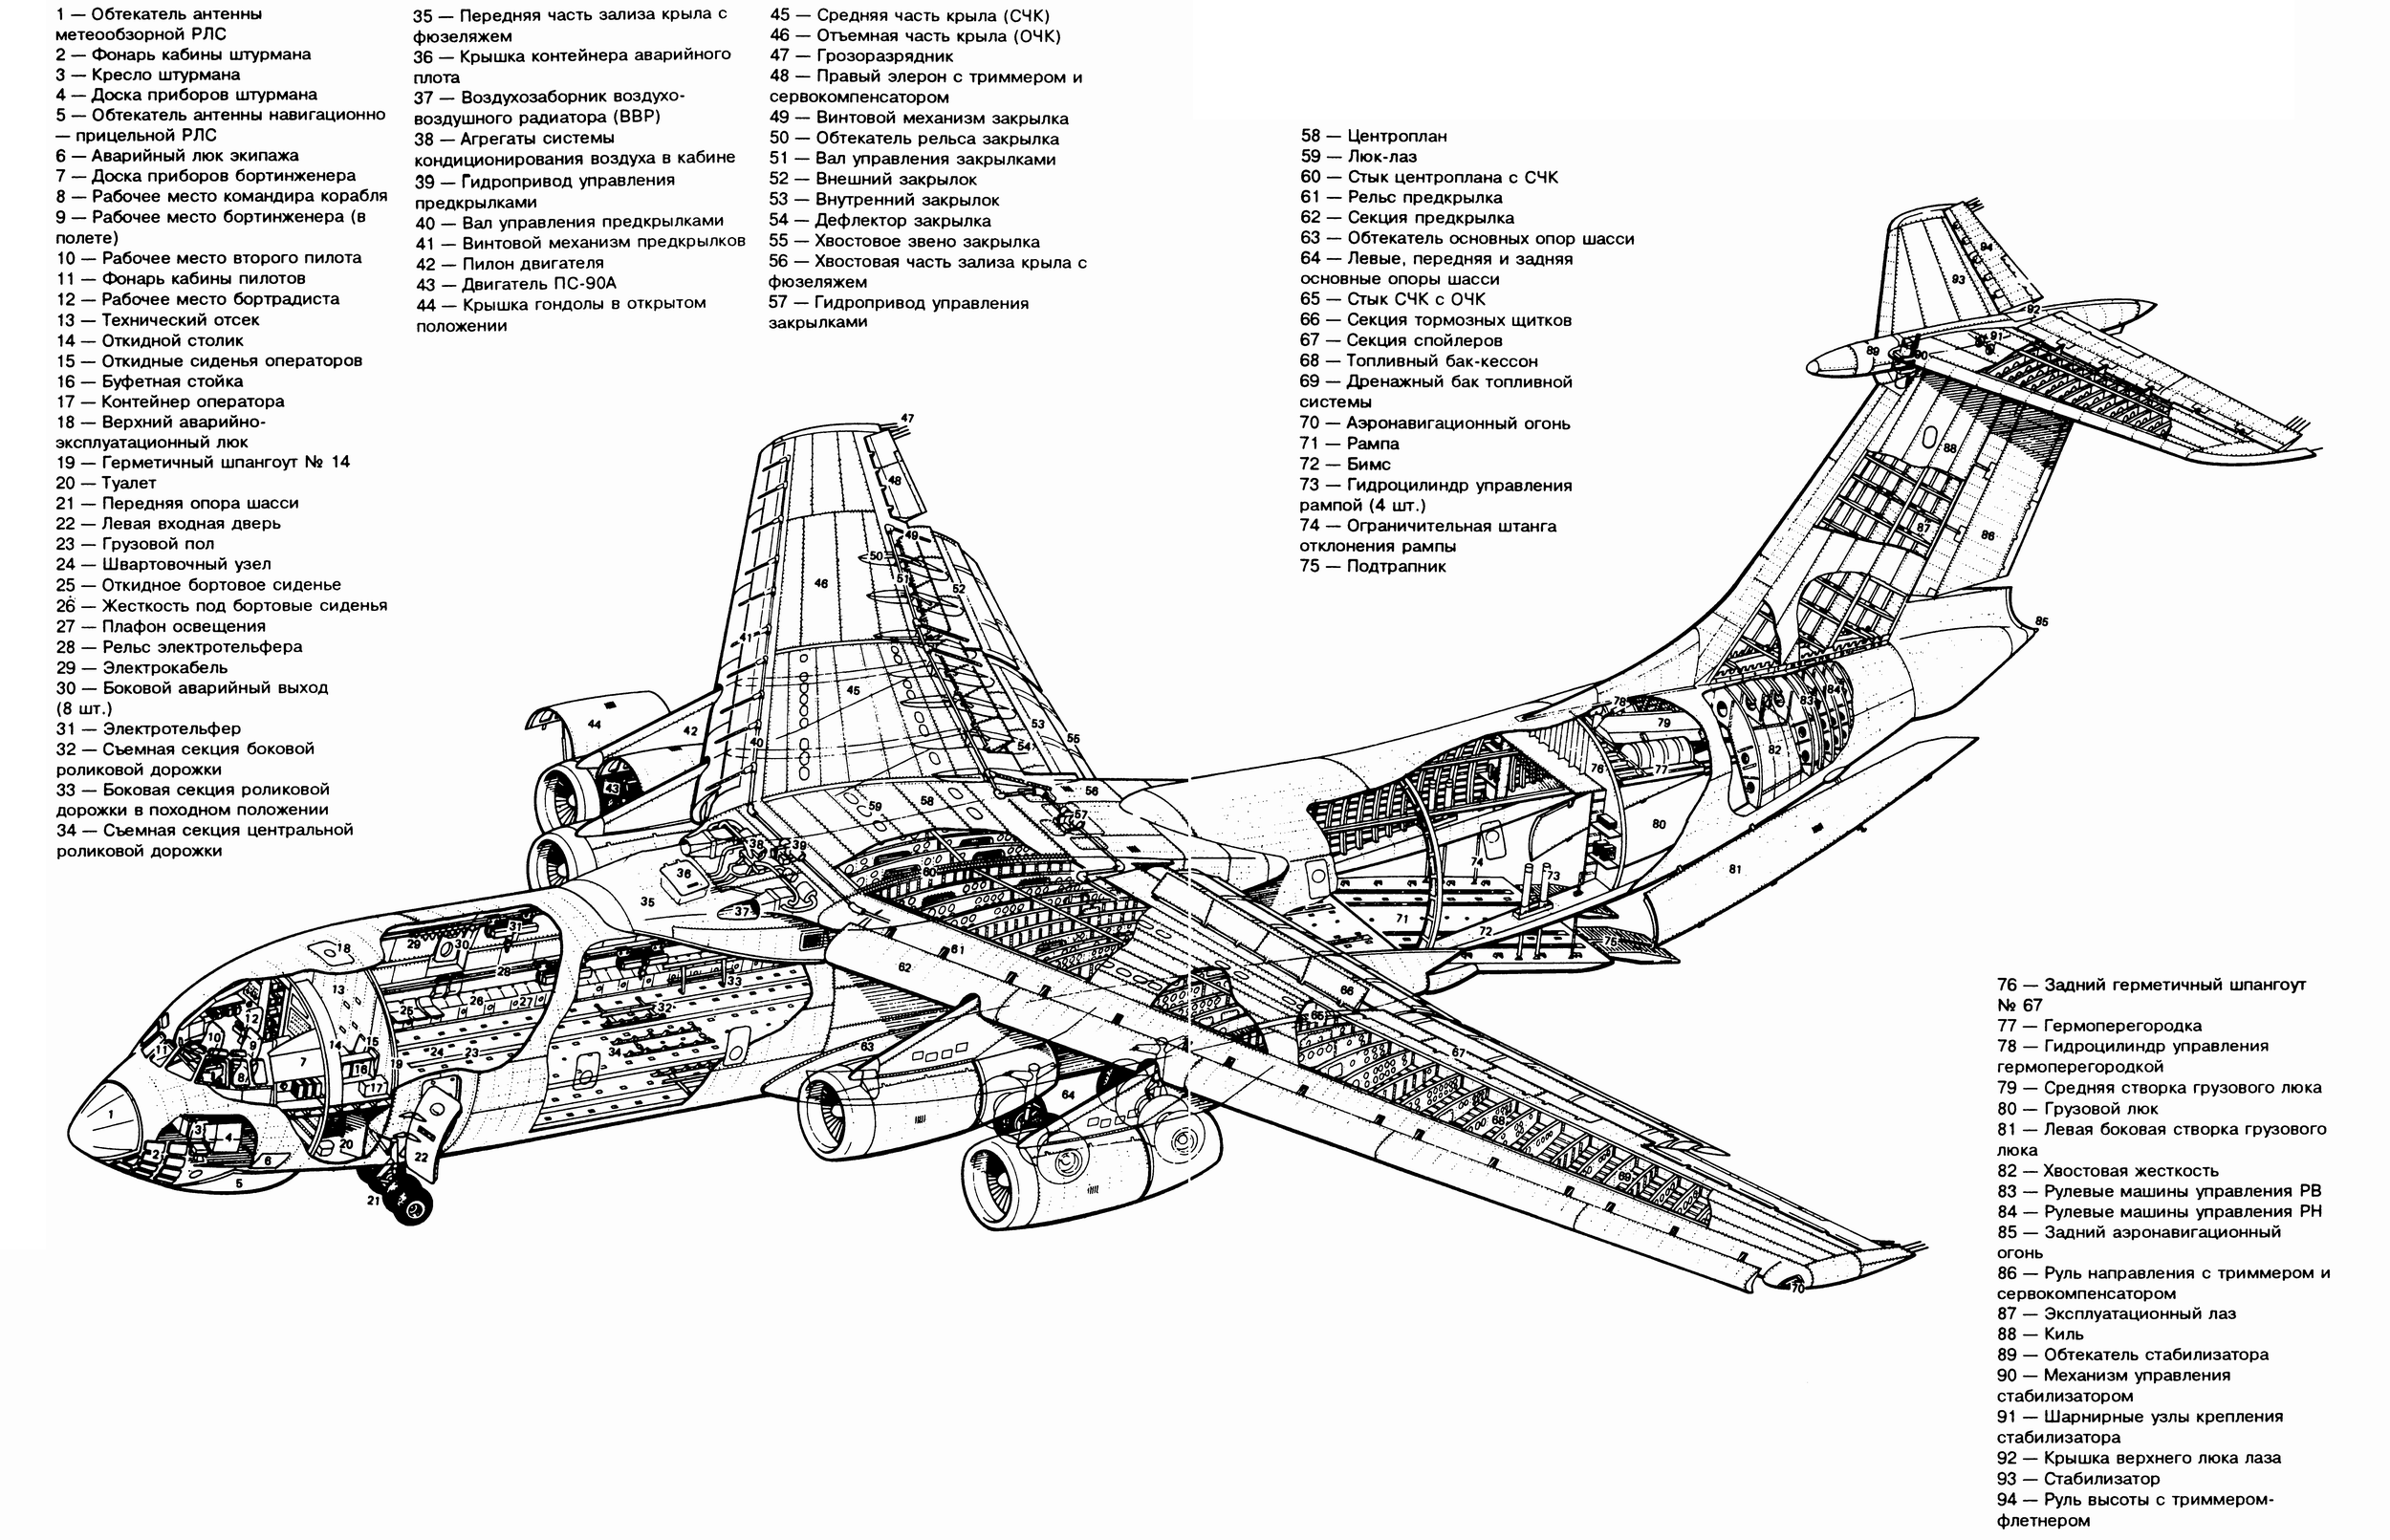 Военно-транспортный самолет Ил-76